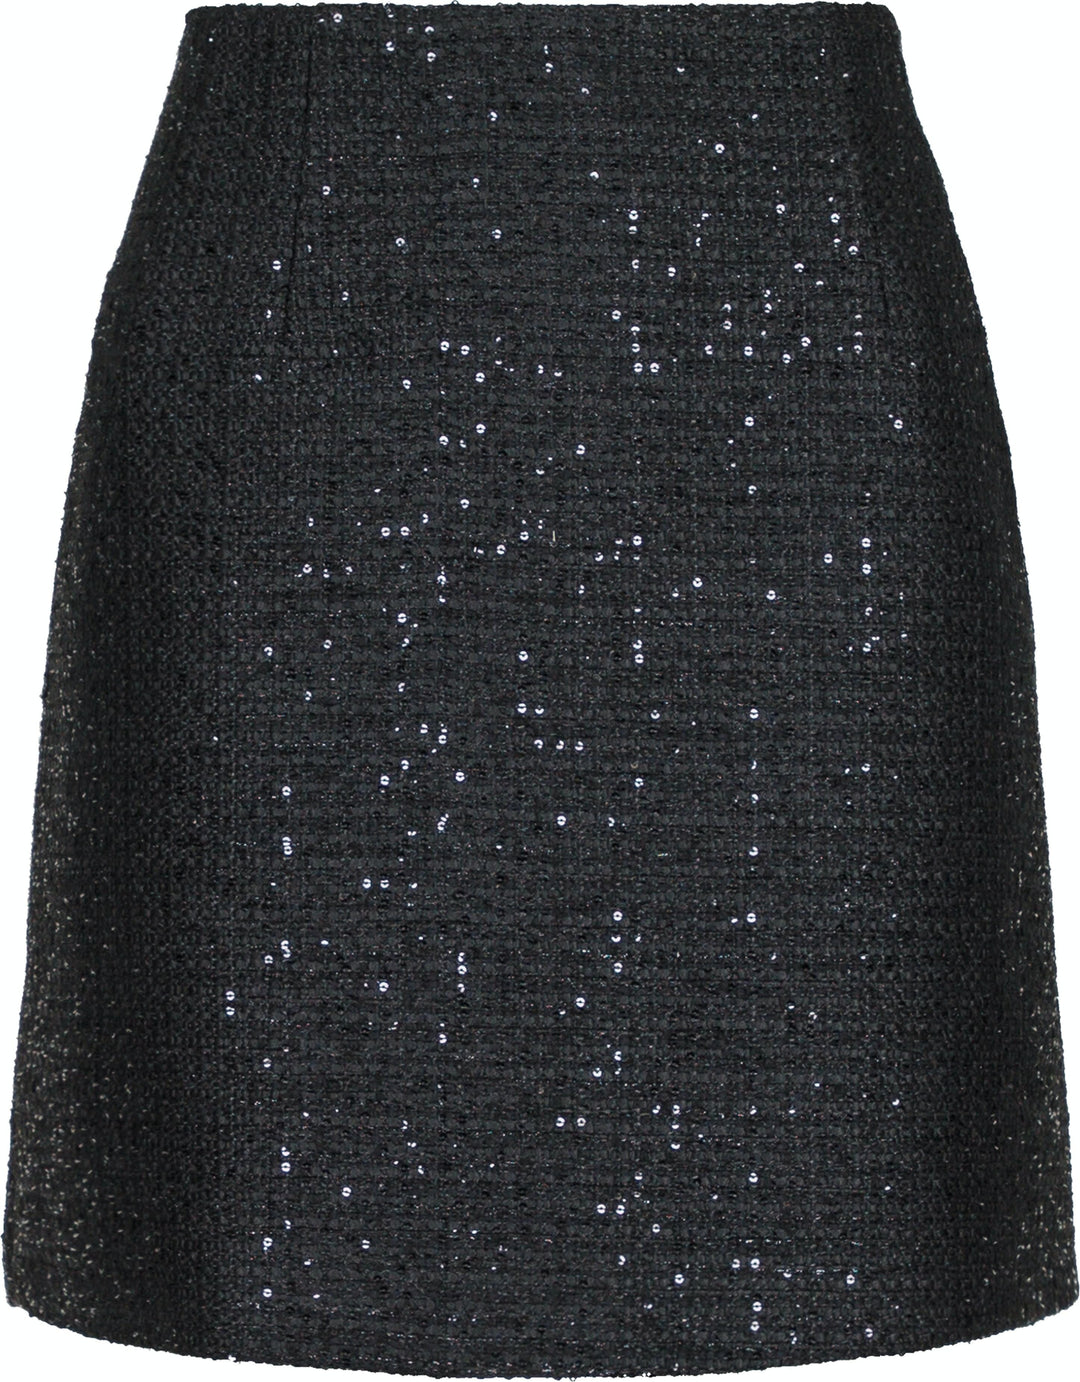 Neo Noir - Helmine Sequins Skirt - Black